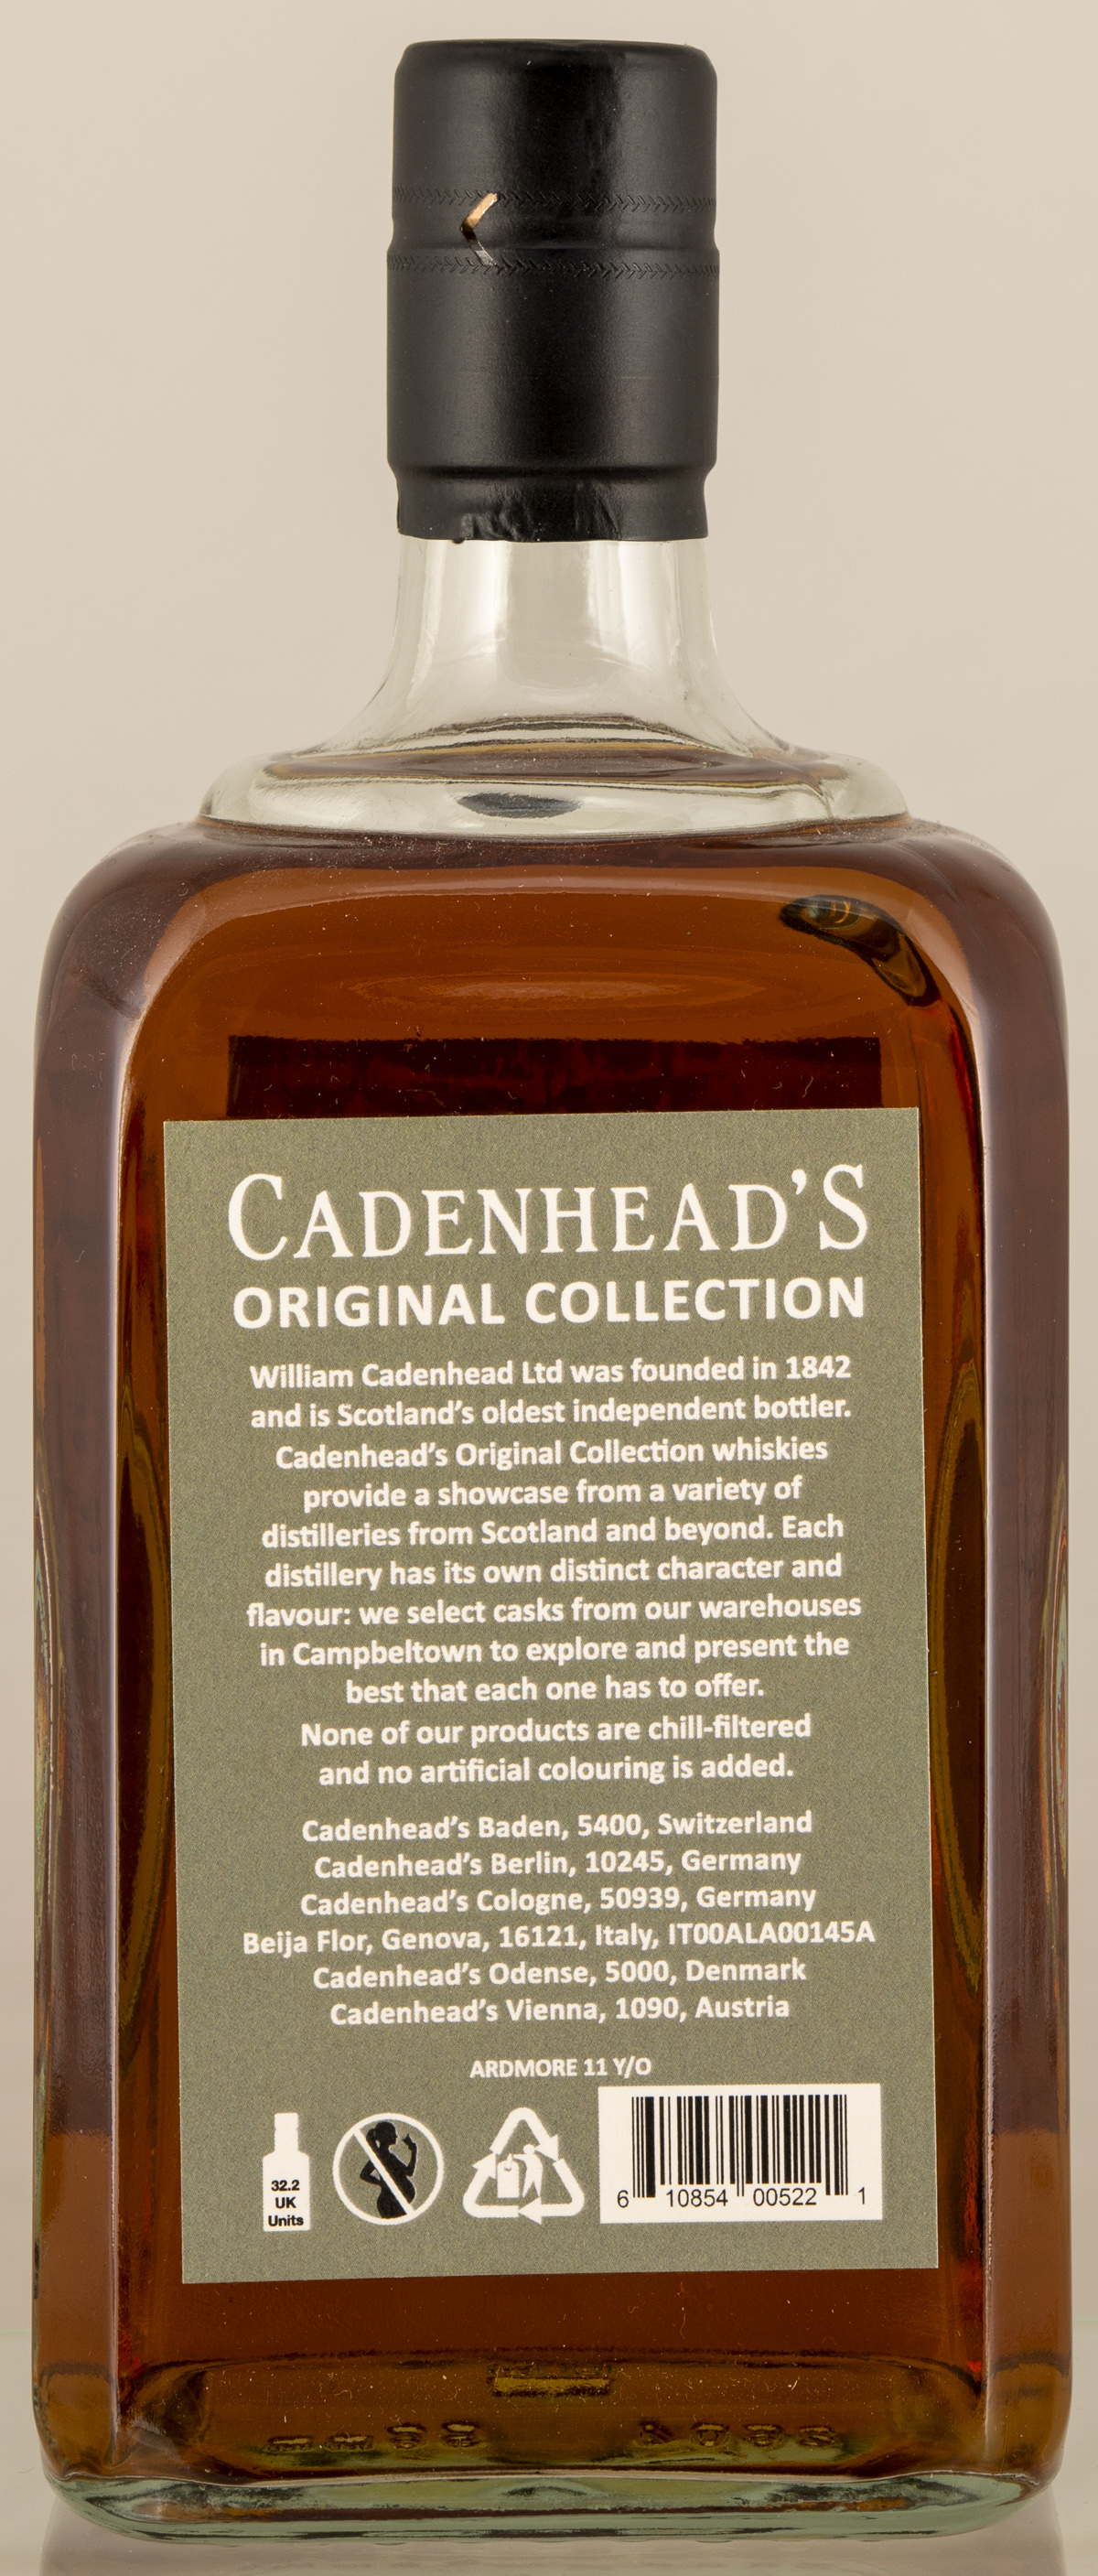 Billede: D85_8370 - Cadenhead Original Collection Ardmore 11 - bottle back.jpg